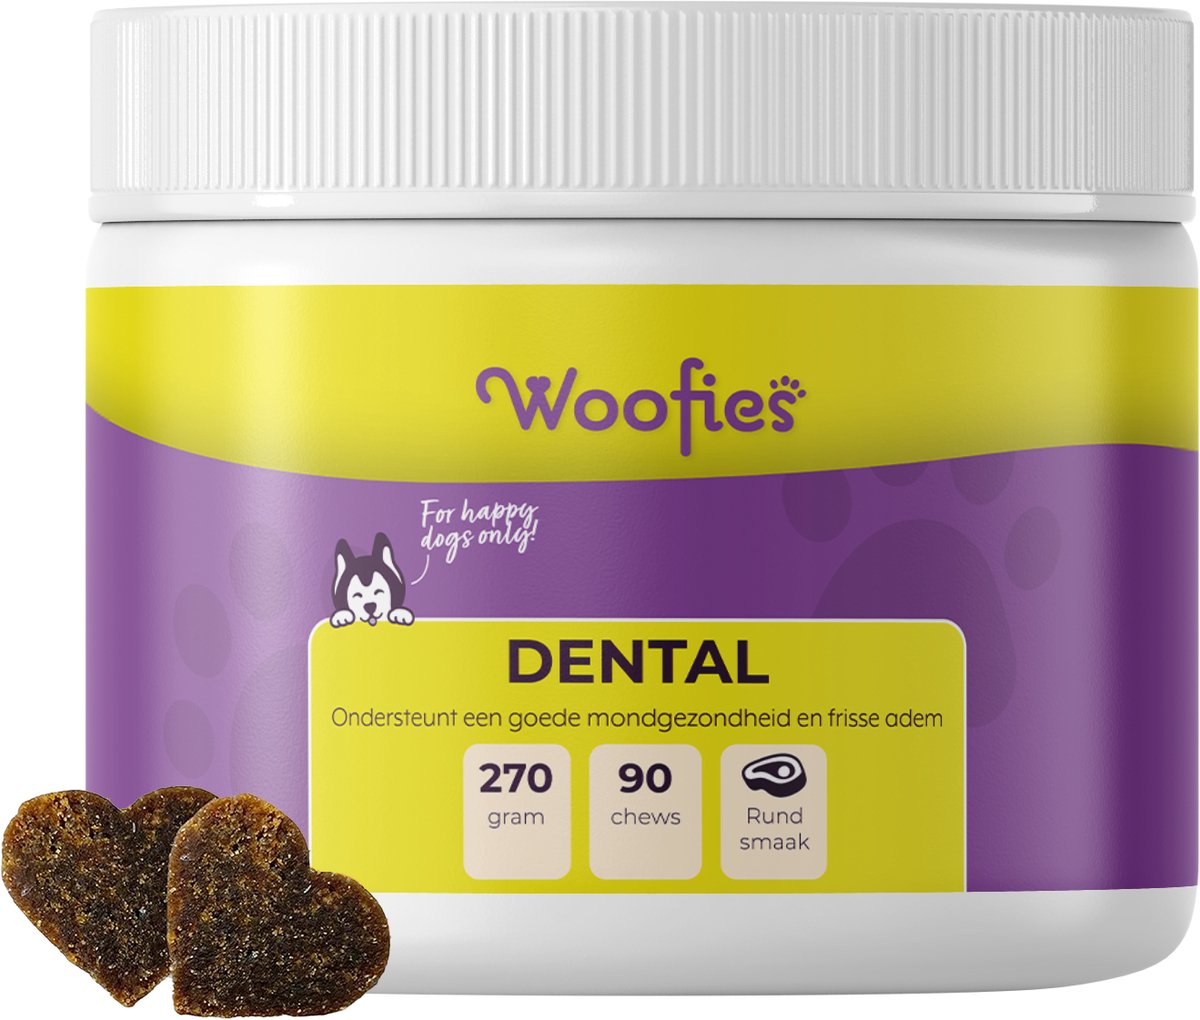 Woofies - Dental voor honden als snoepje - Ondersteunt een goede mondgezondheid en frisse adem - 90 Chews - Rundersmaak